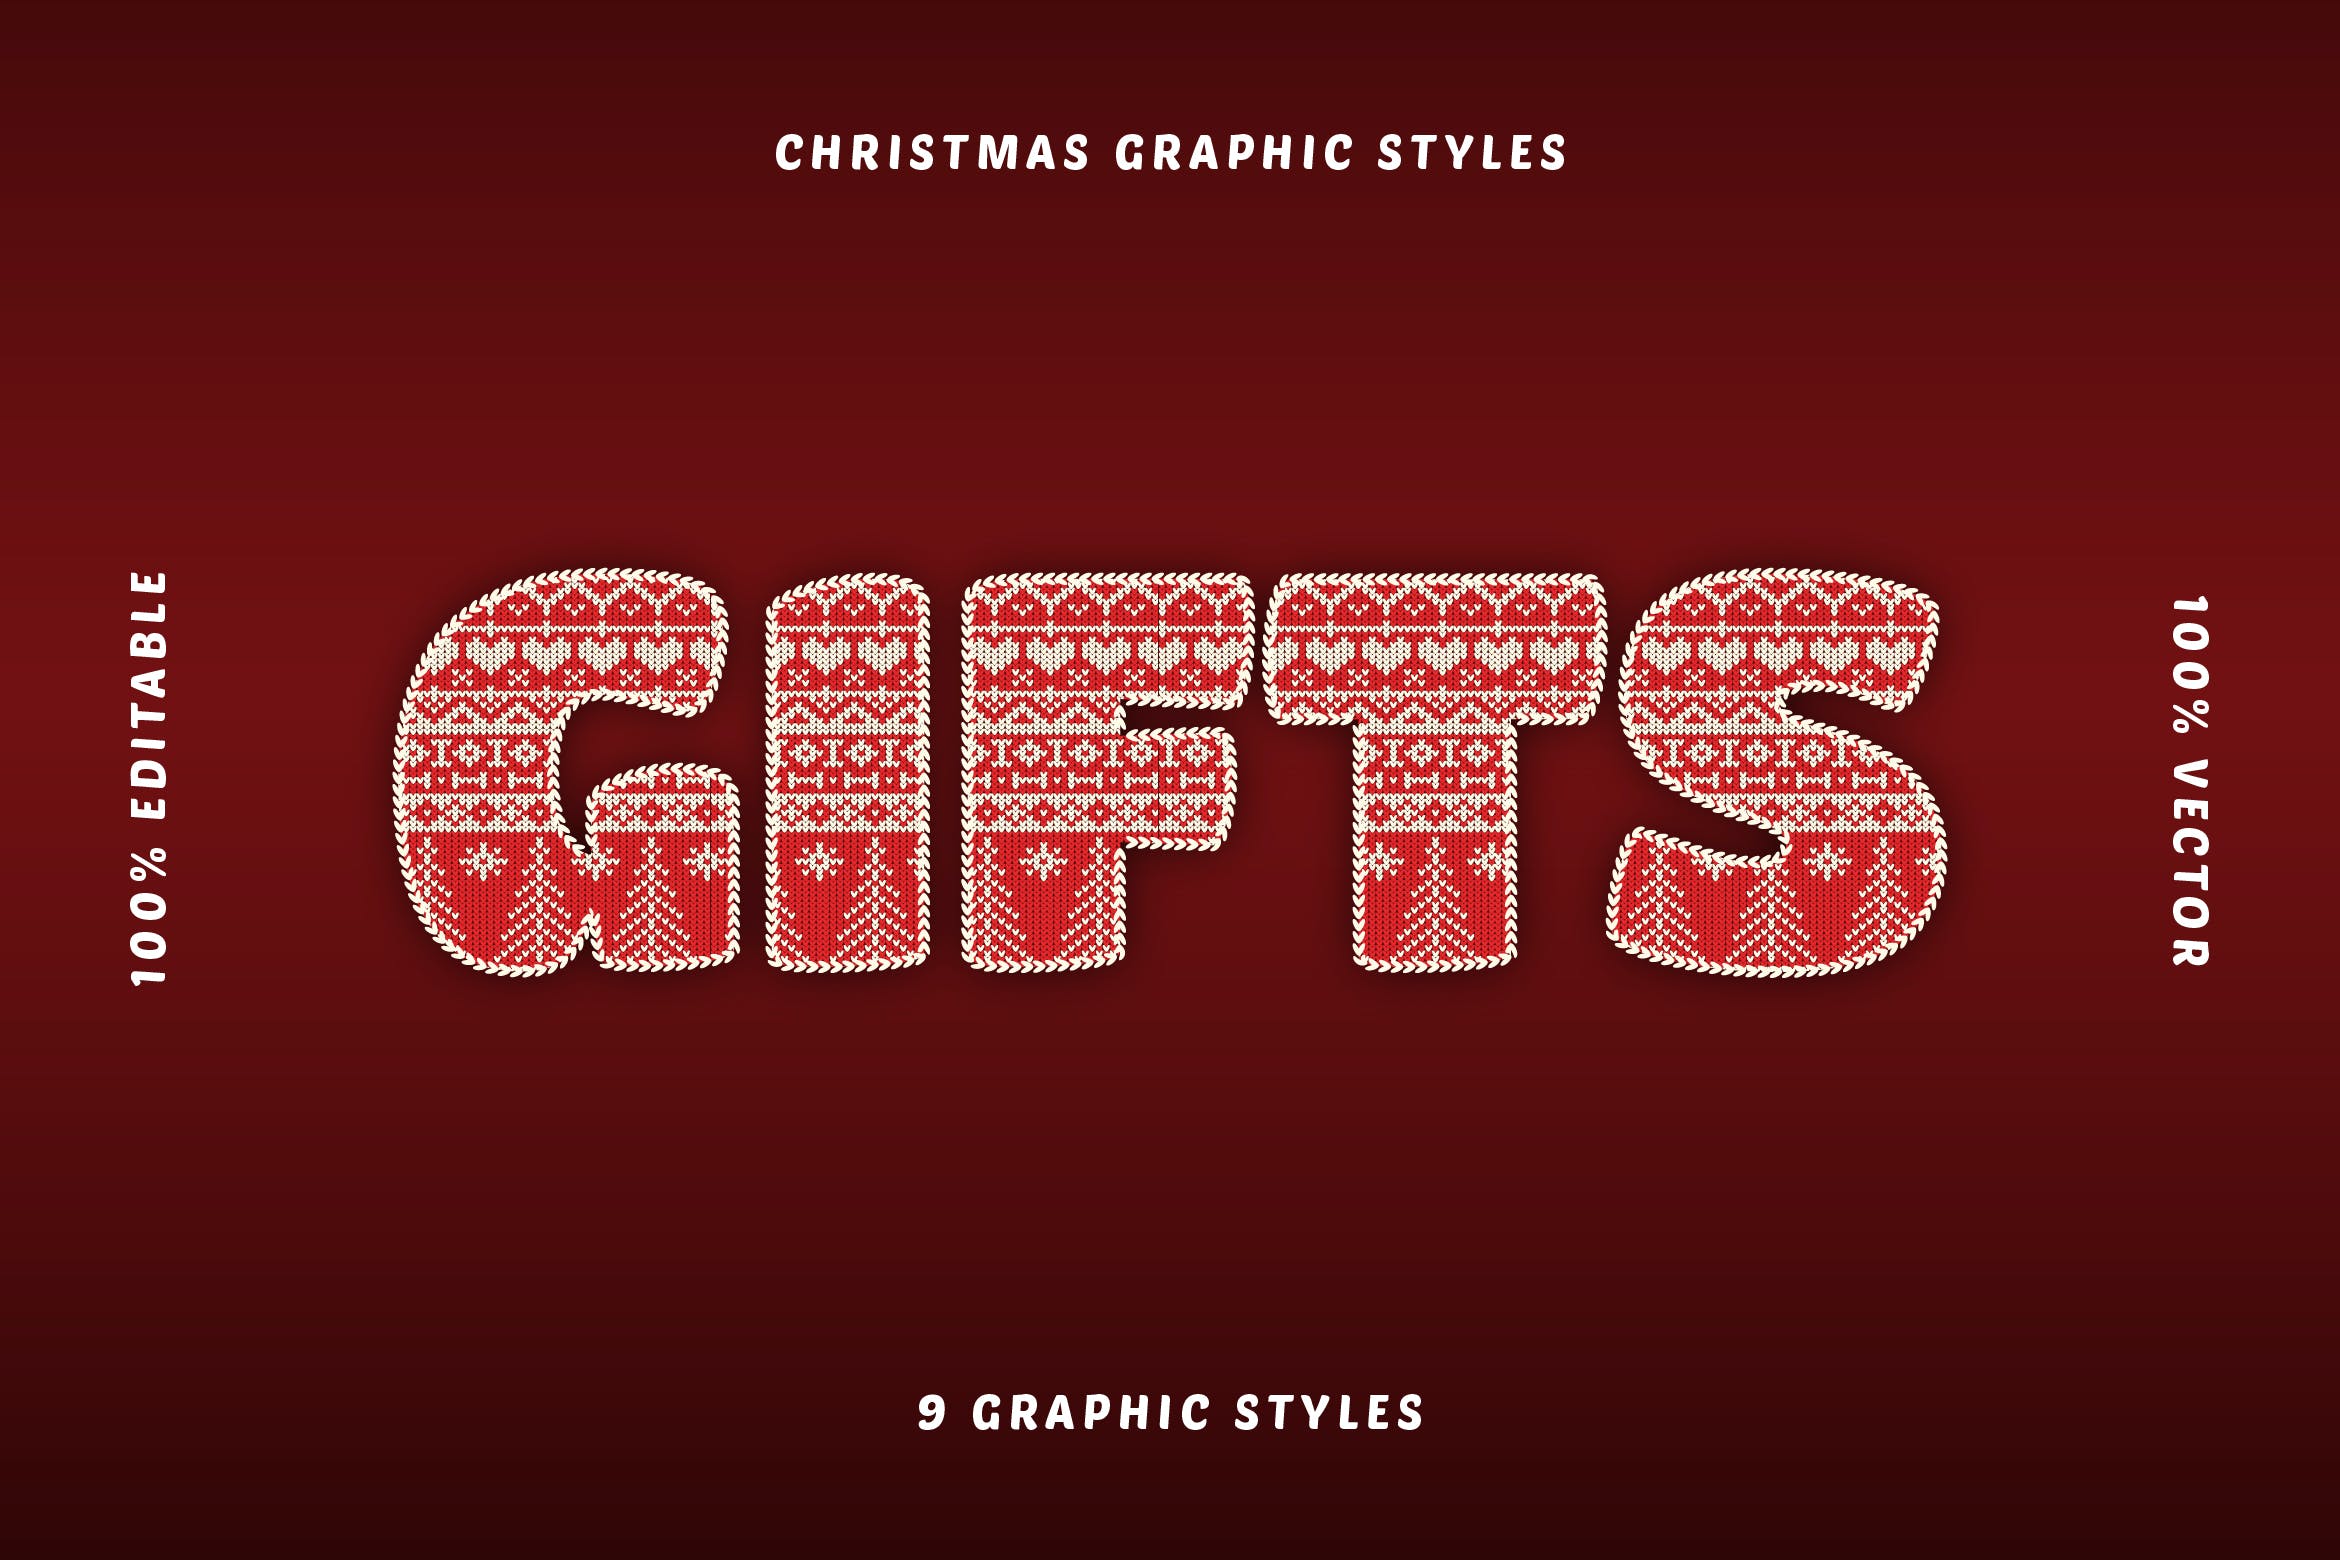 圣诞主题矢量文本效果 Christmas Text Effects Illustrator 插件预设 第1张